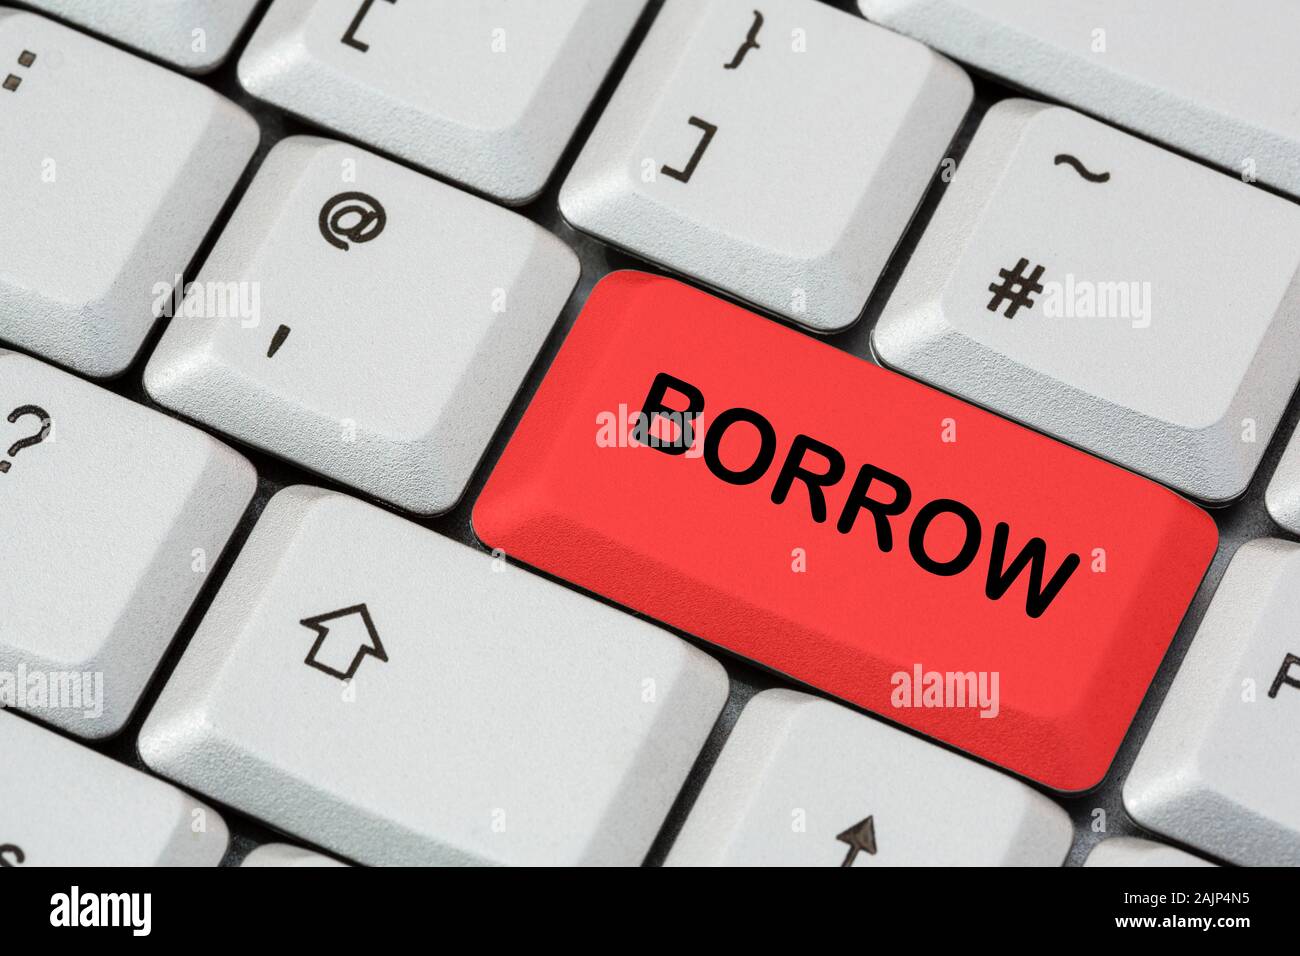 Un teclado con la palabra BORROW escrita en letras negras en la tecla ENTER roja. Concepto de deuda y dinero en préstamo. Inglaterra, Reino Unido, Gran Bretaña Foto de stock